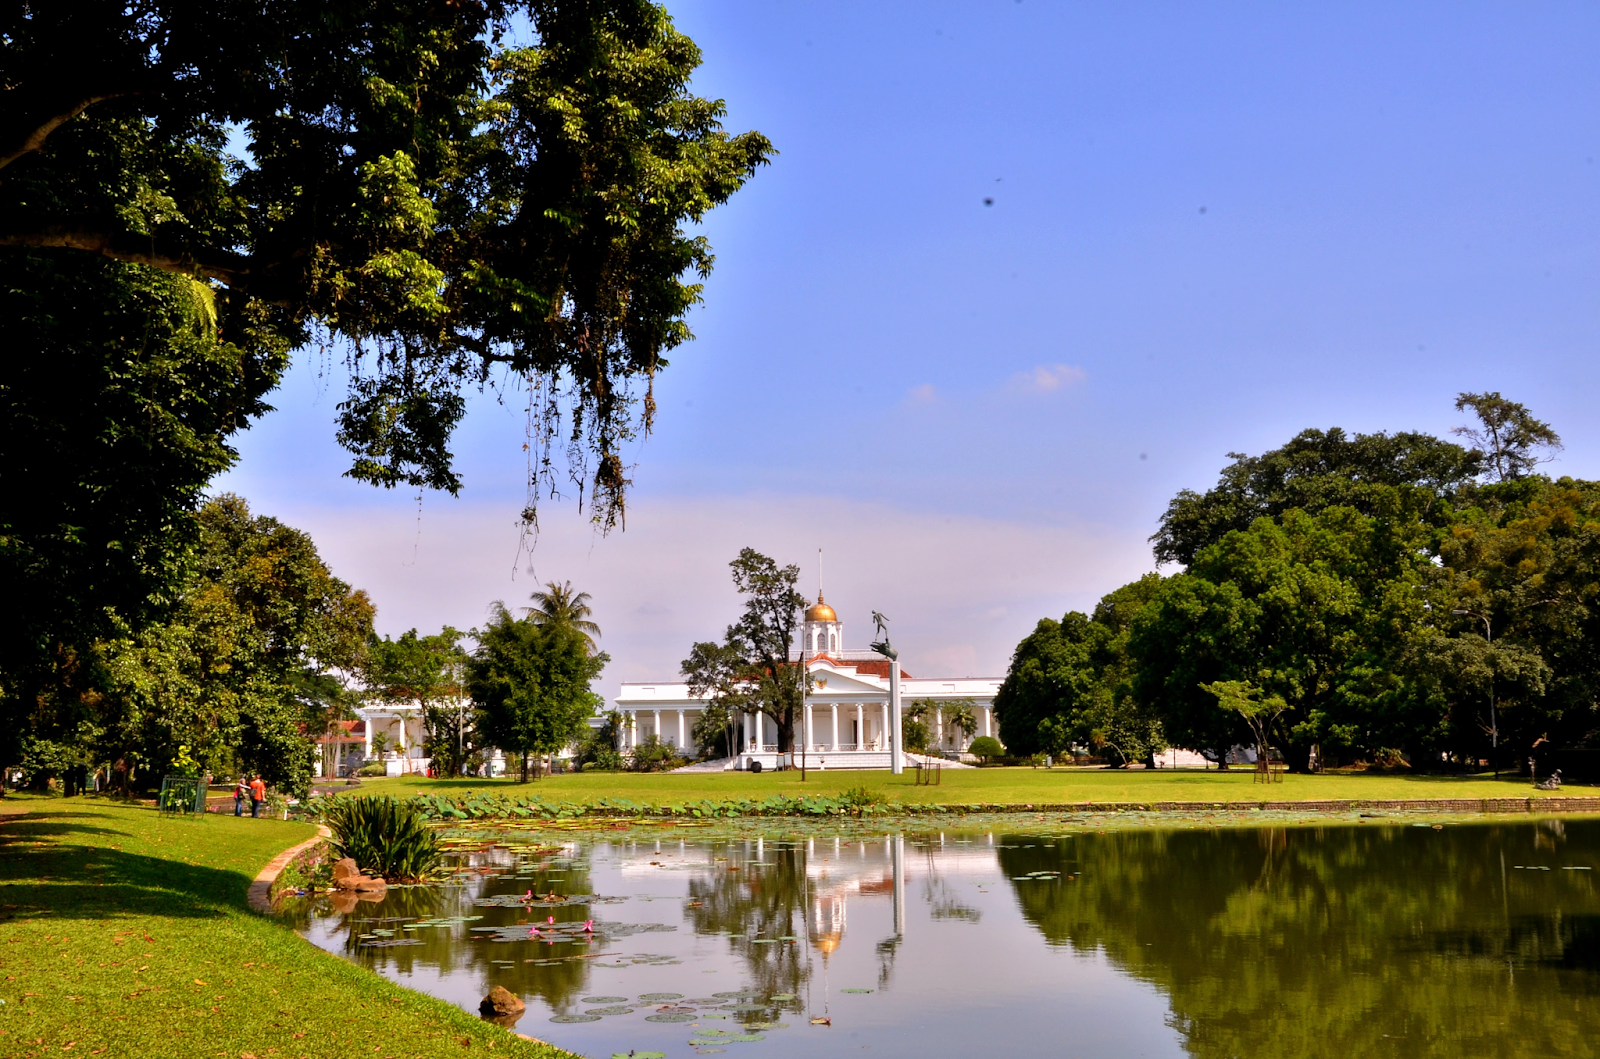 Lanskap Kebun Raya Bogor dengan Istana Bogor di dalamnya